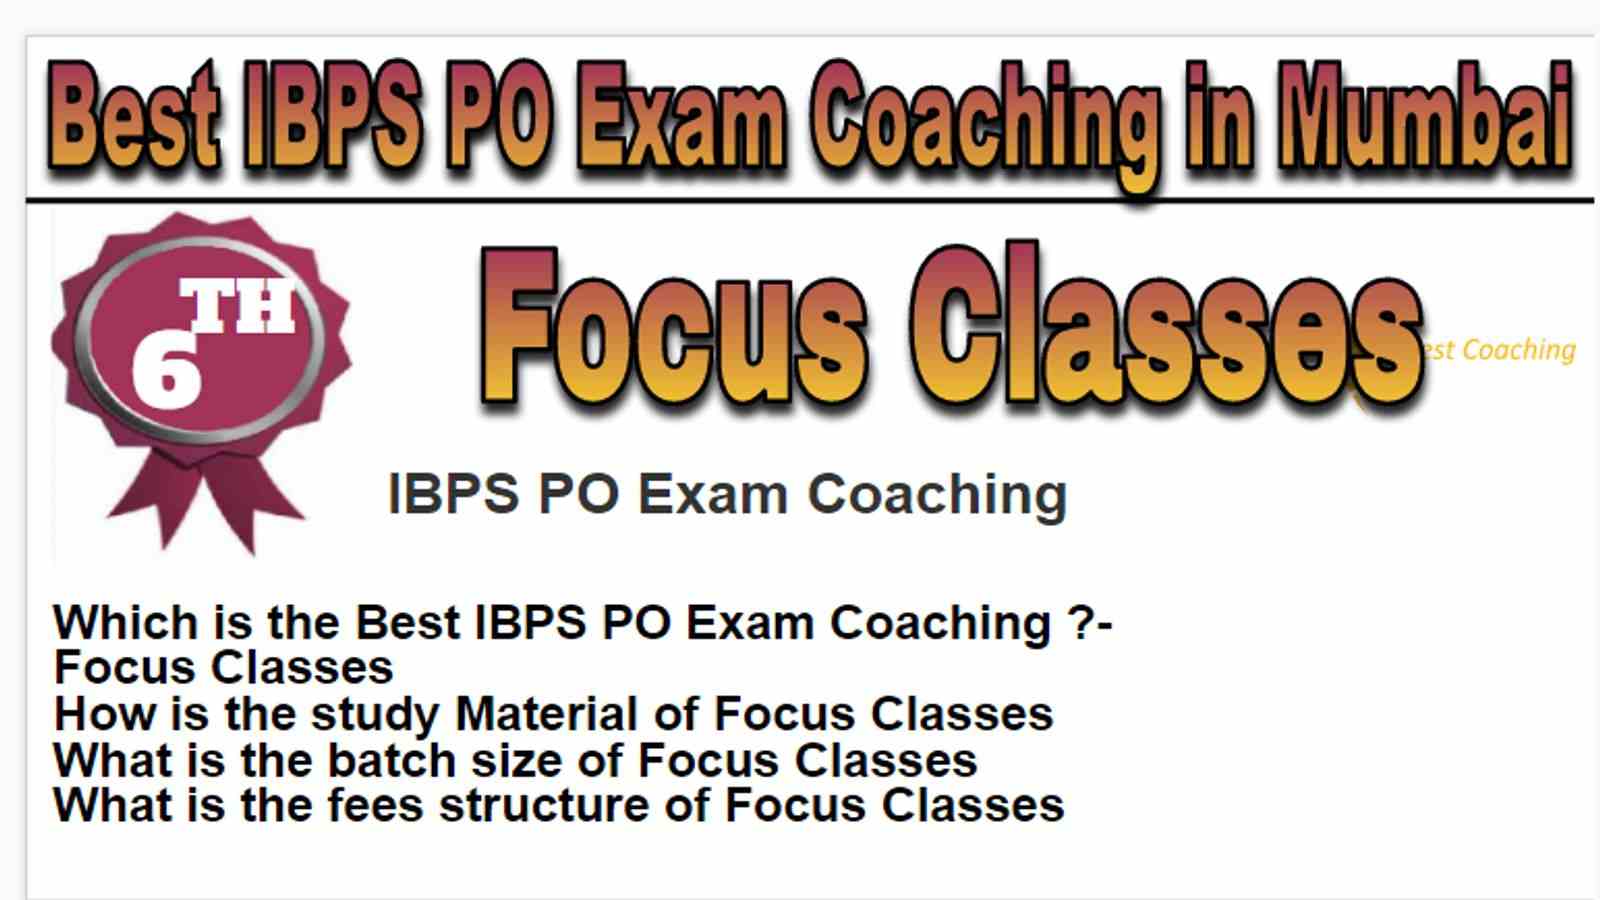 Rank 6 Best IBPS PO Exam Coaching in Mumbai